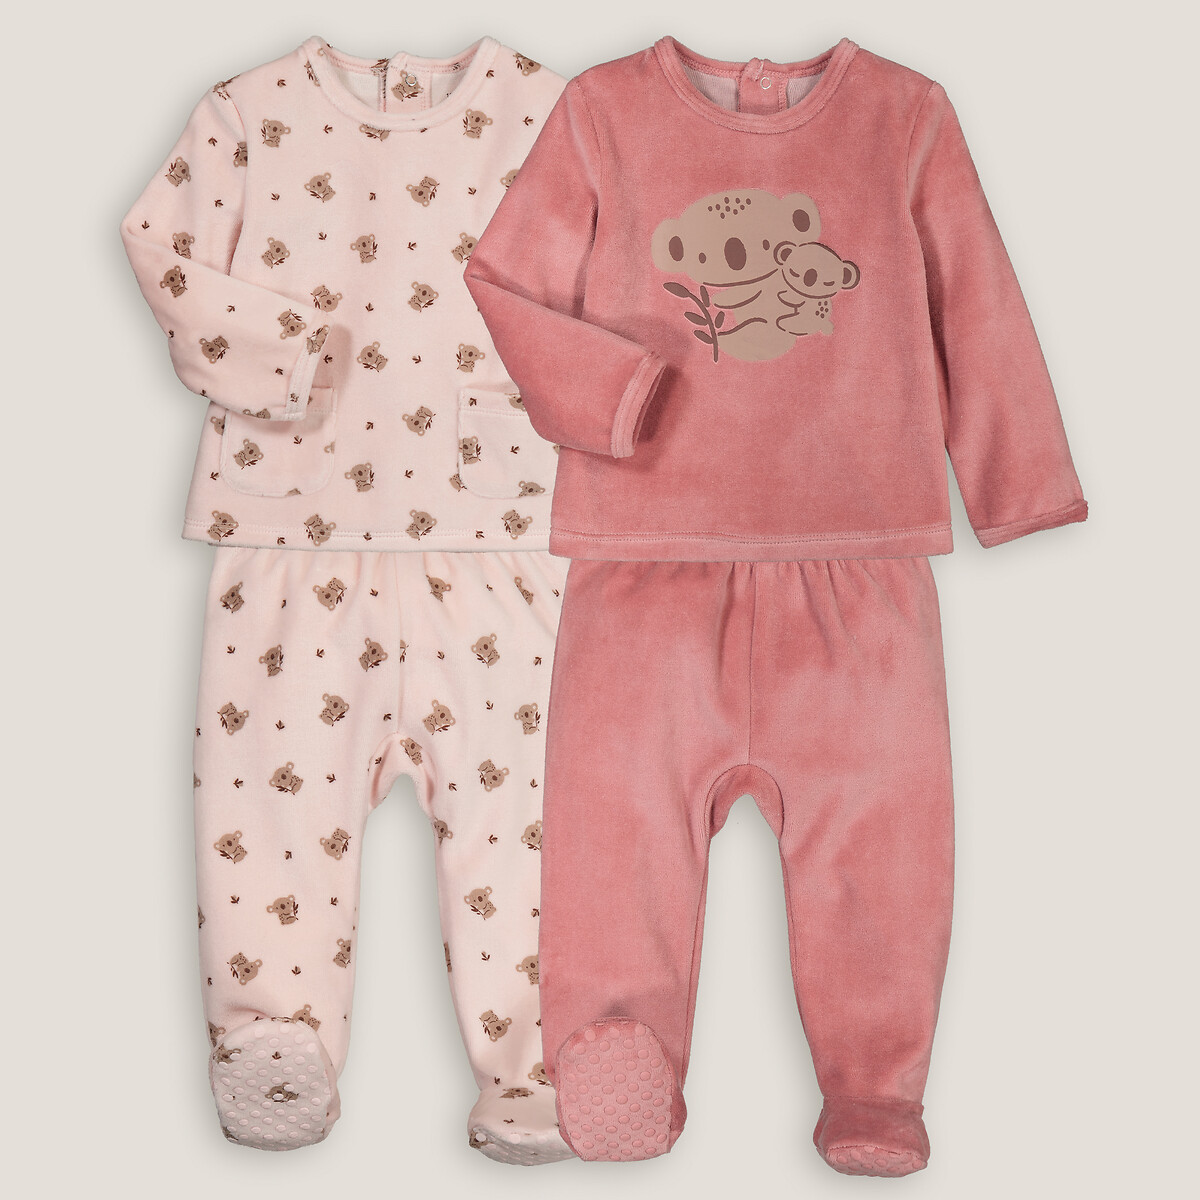 Комплект из двух пижам раздельных из велюра принт коалы 4 года - 102 см розовый комплект из двух пижам из велюра рожденные раньше срока 45 см розовый